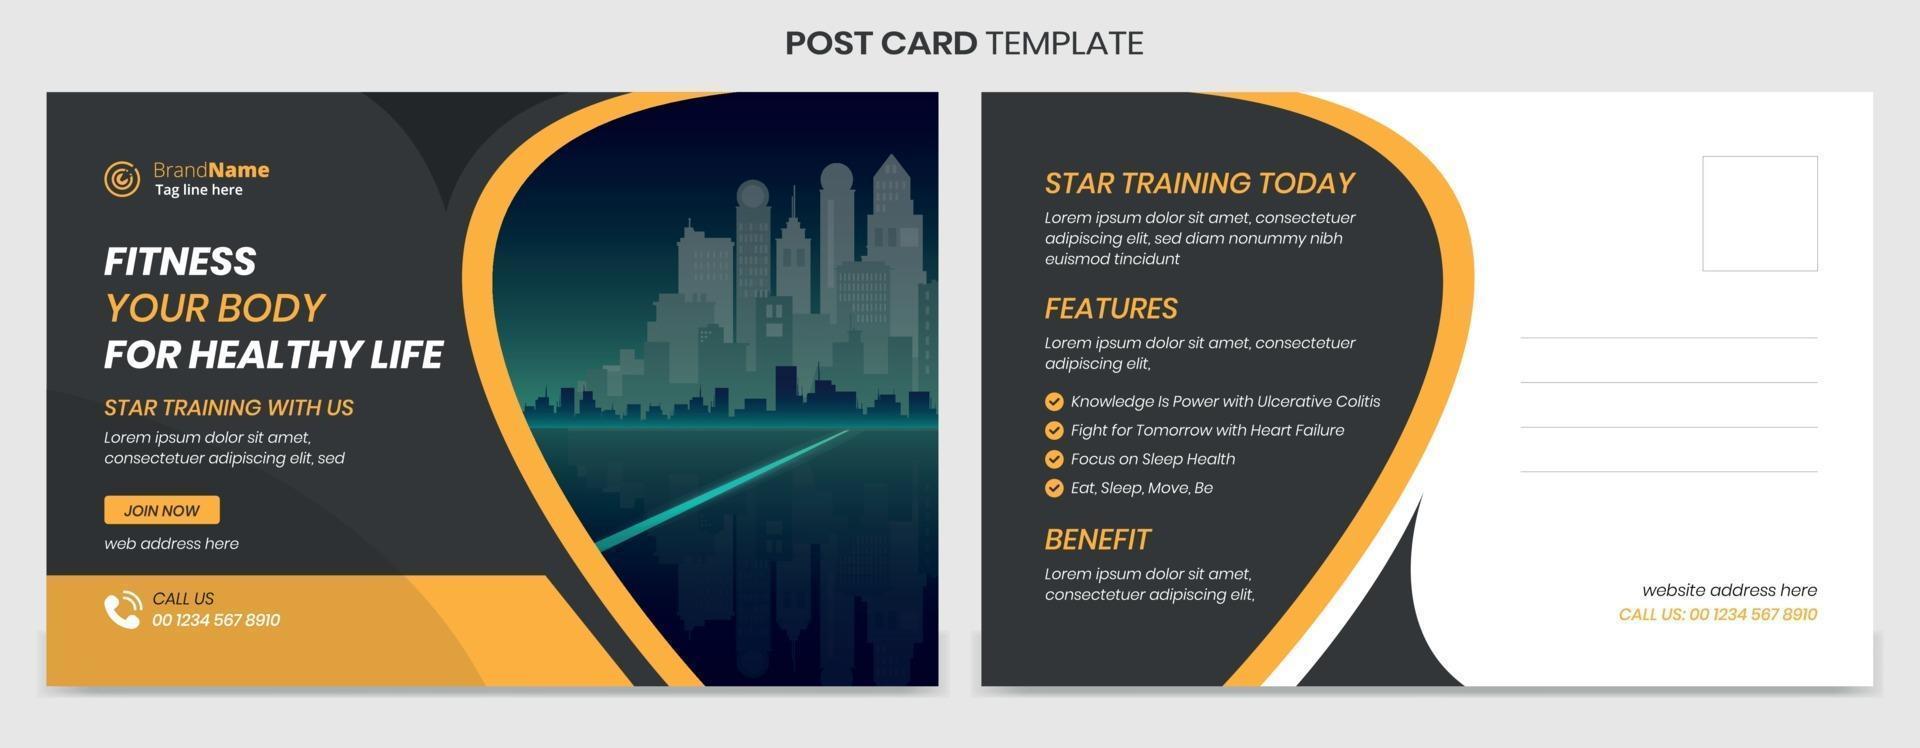 modernes und professionelles Postkarten-Template-Design vektor